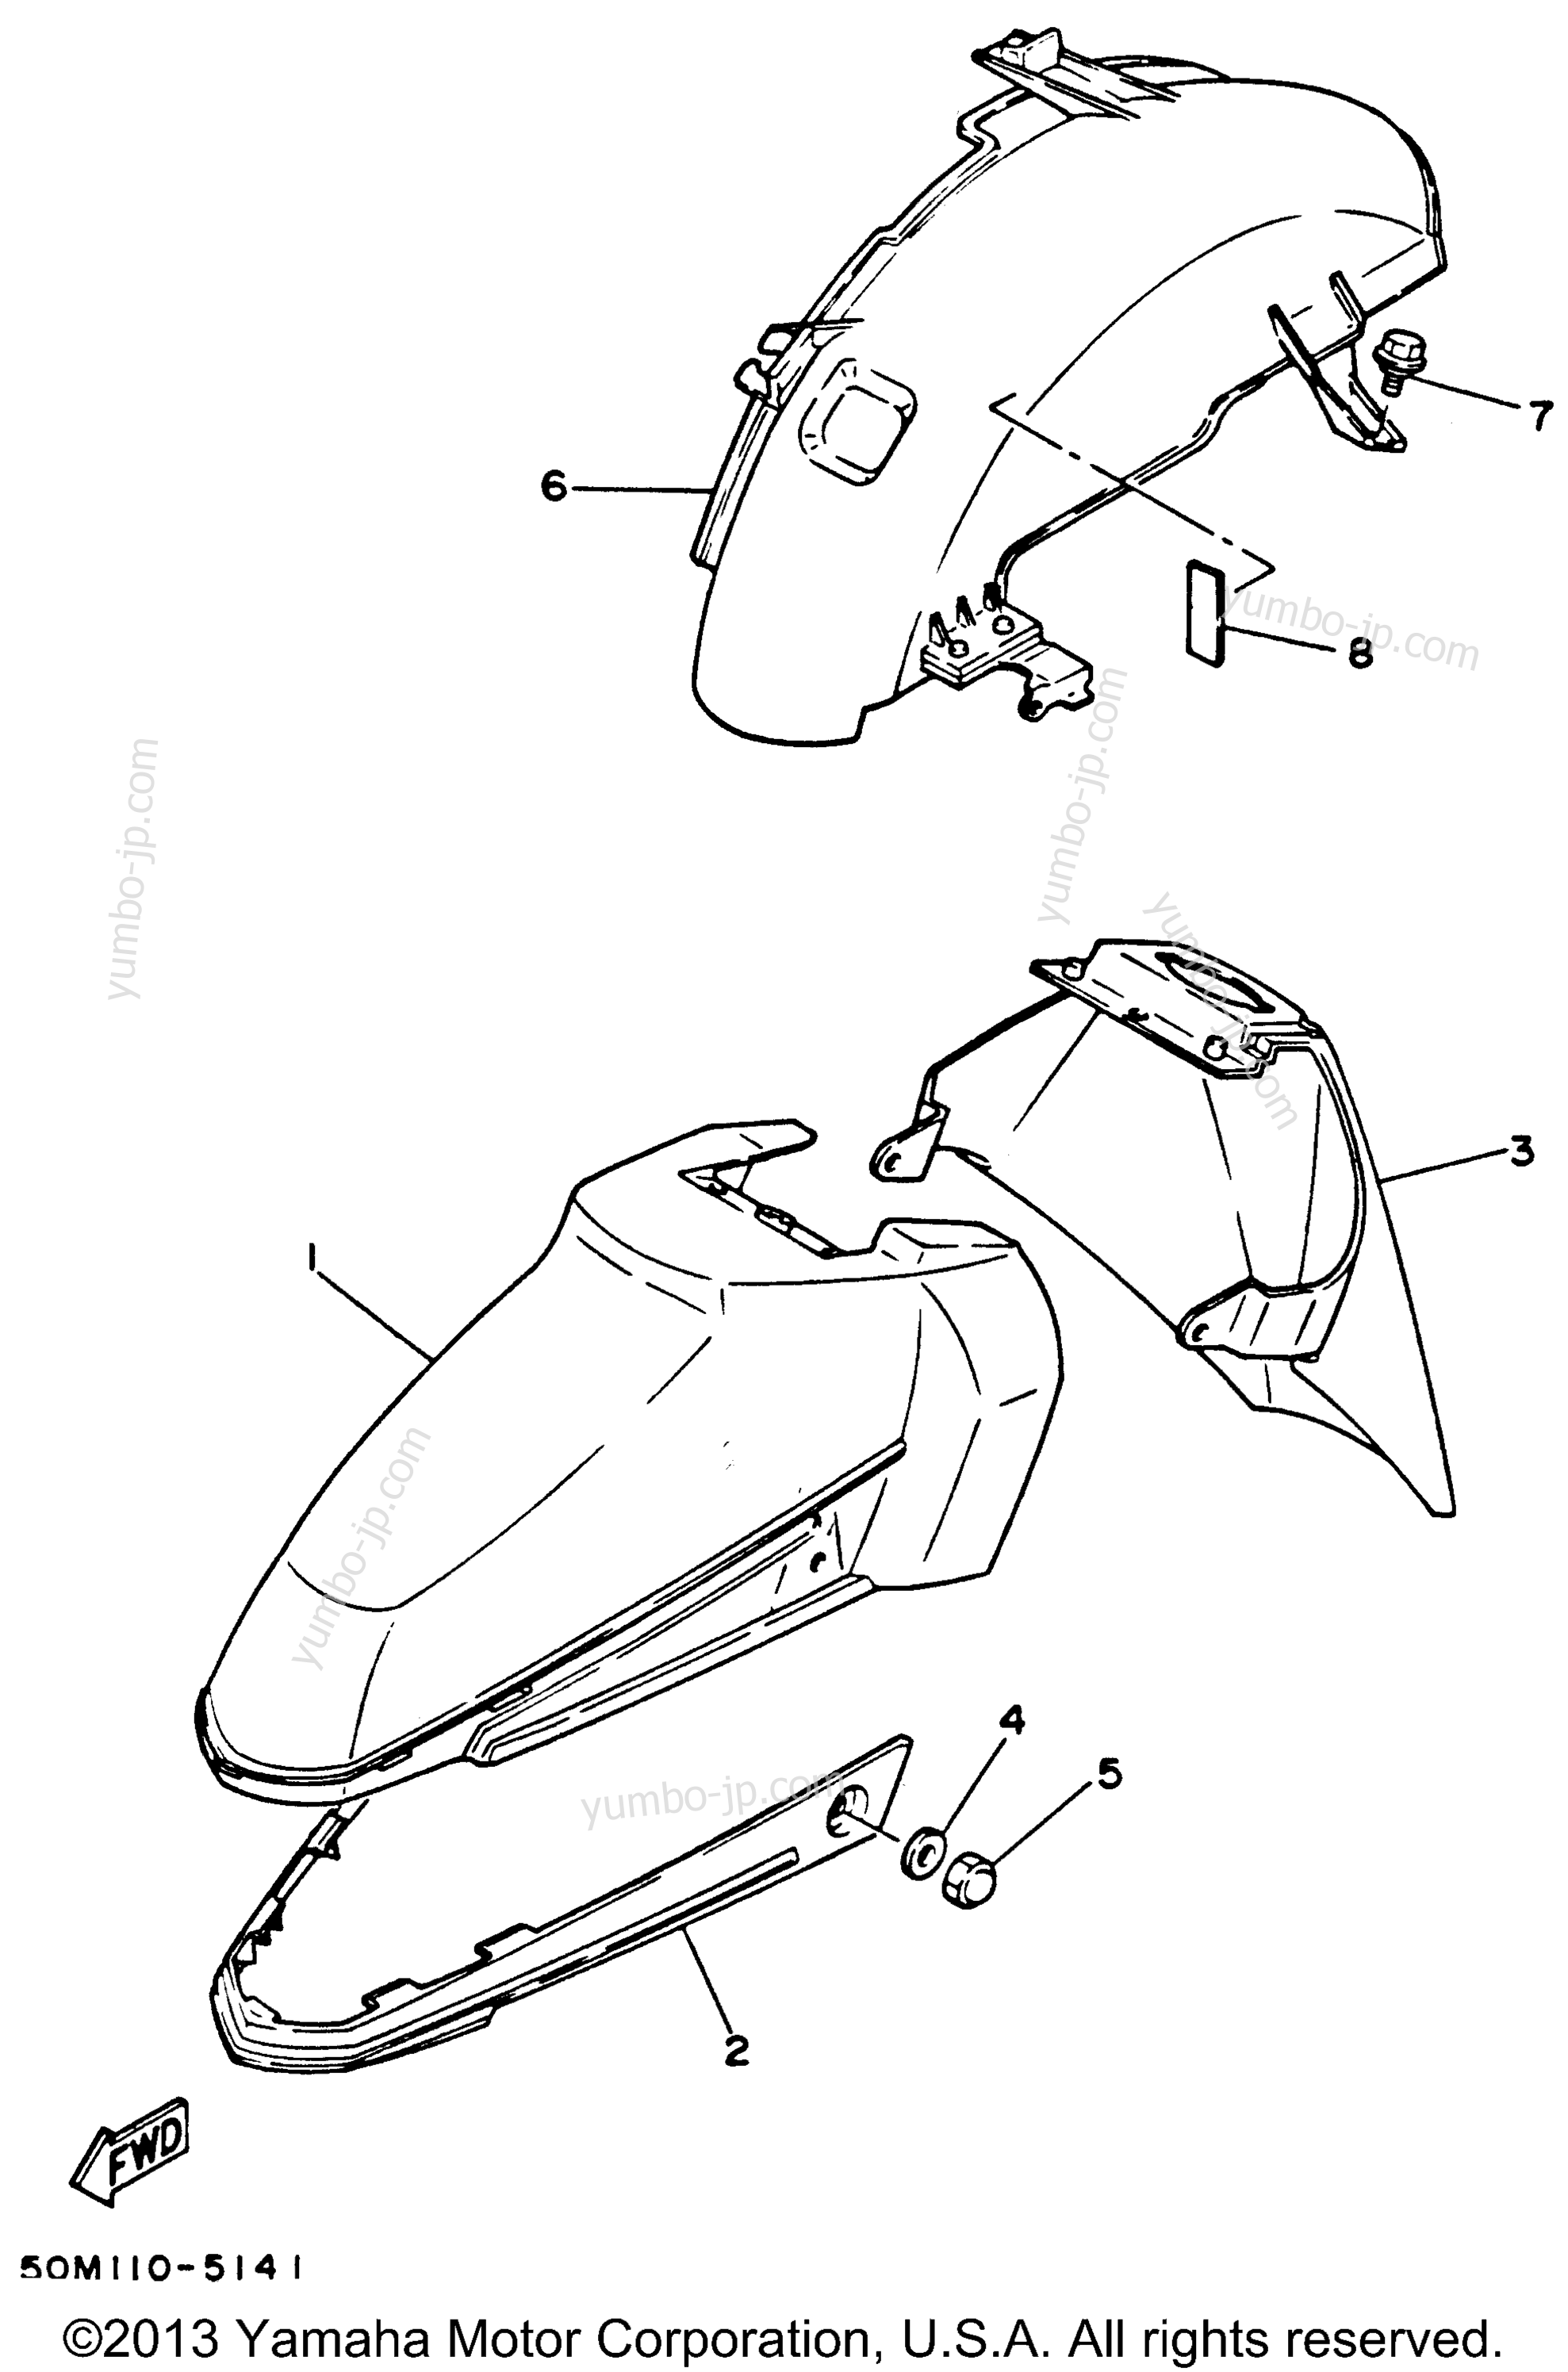 FENDER для скутеров YAMAHA RIVA 125 (XC125H) 1996 г.